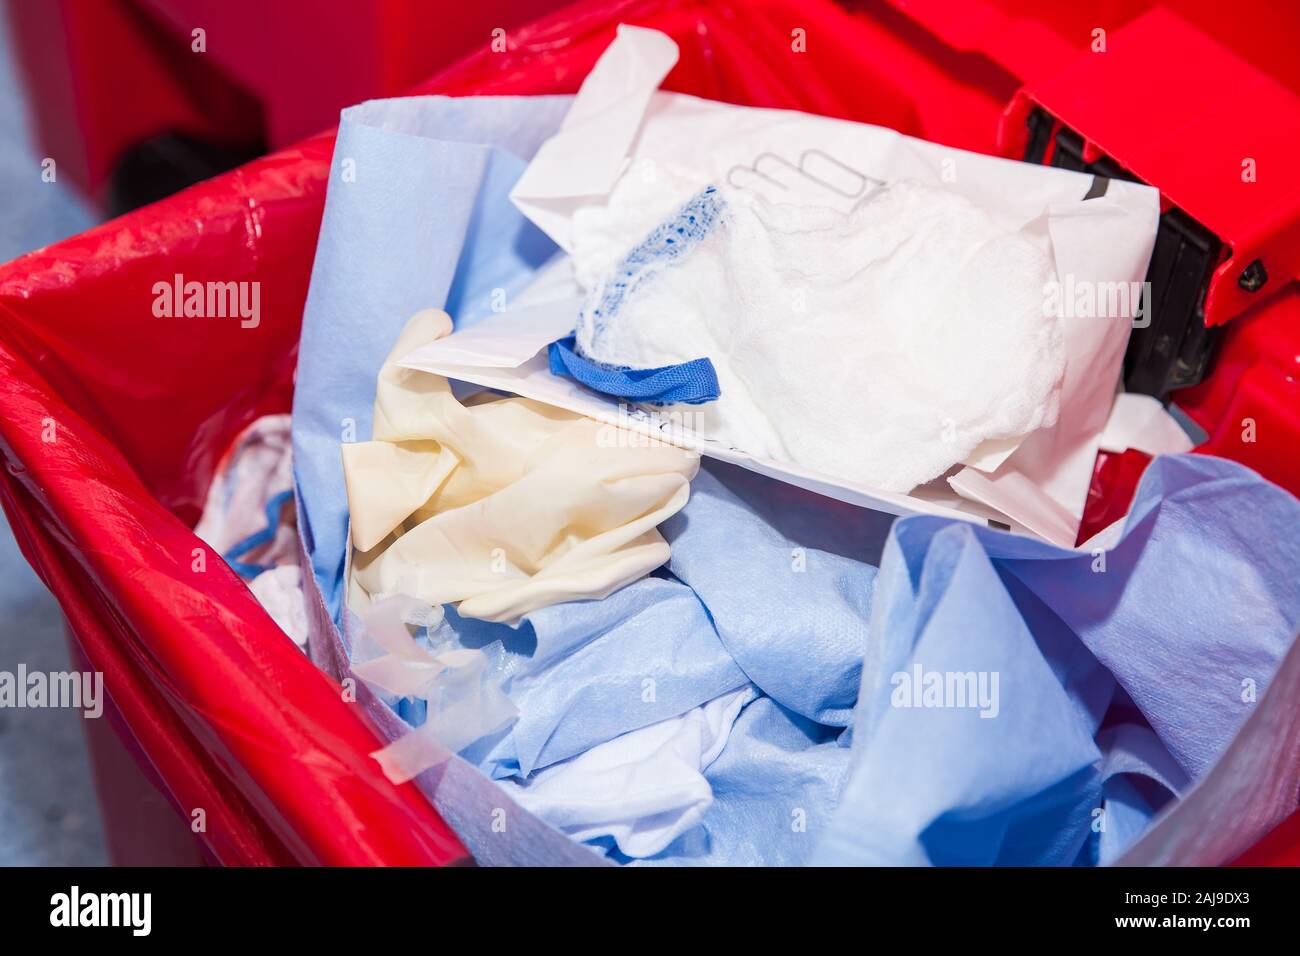 Riesgo biológico los desechos vertidos en la bolsa de basura roja en un quirófano de un hospital Foto de stock